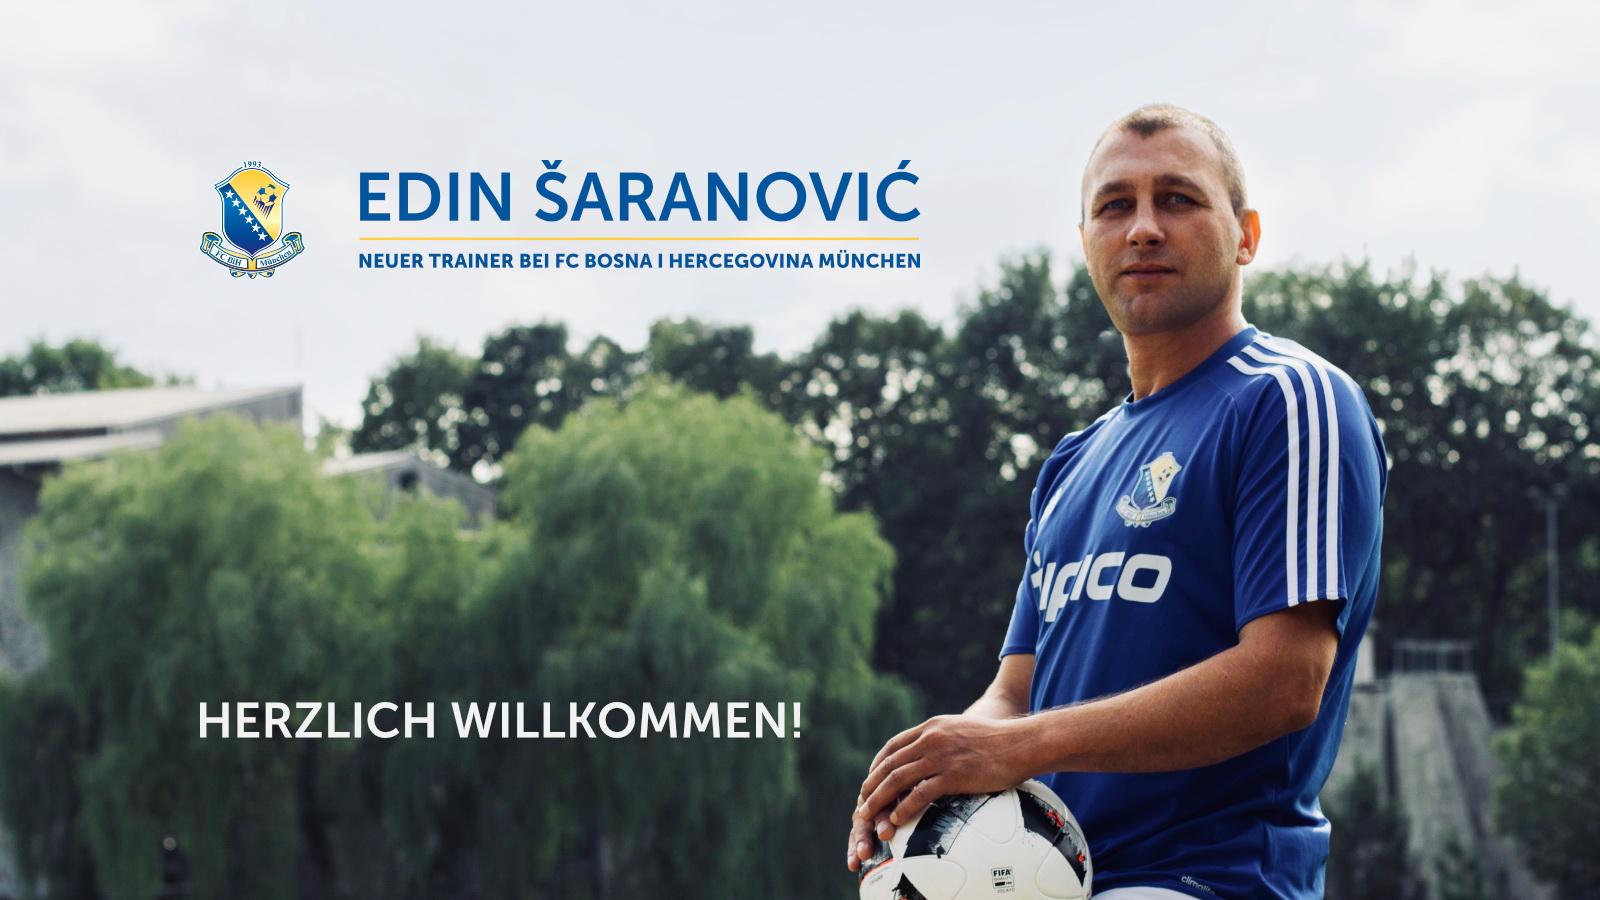 Bivši igrač Sarajeva Edin Šaranović u Njemačkoj: Tužno je da vas nepravda otjera